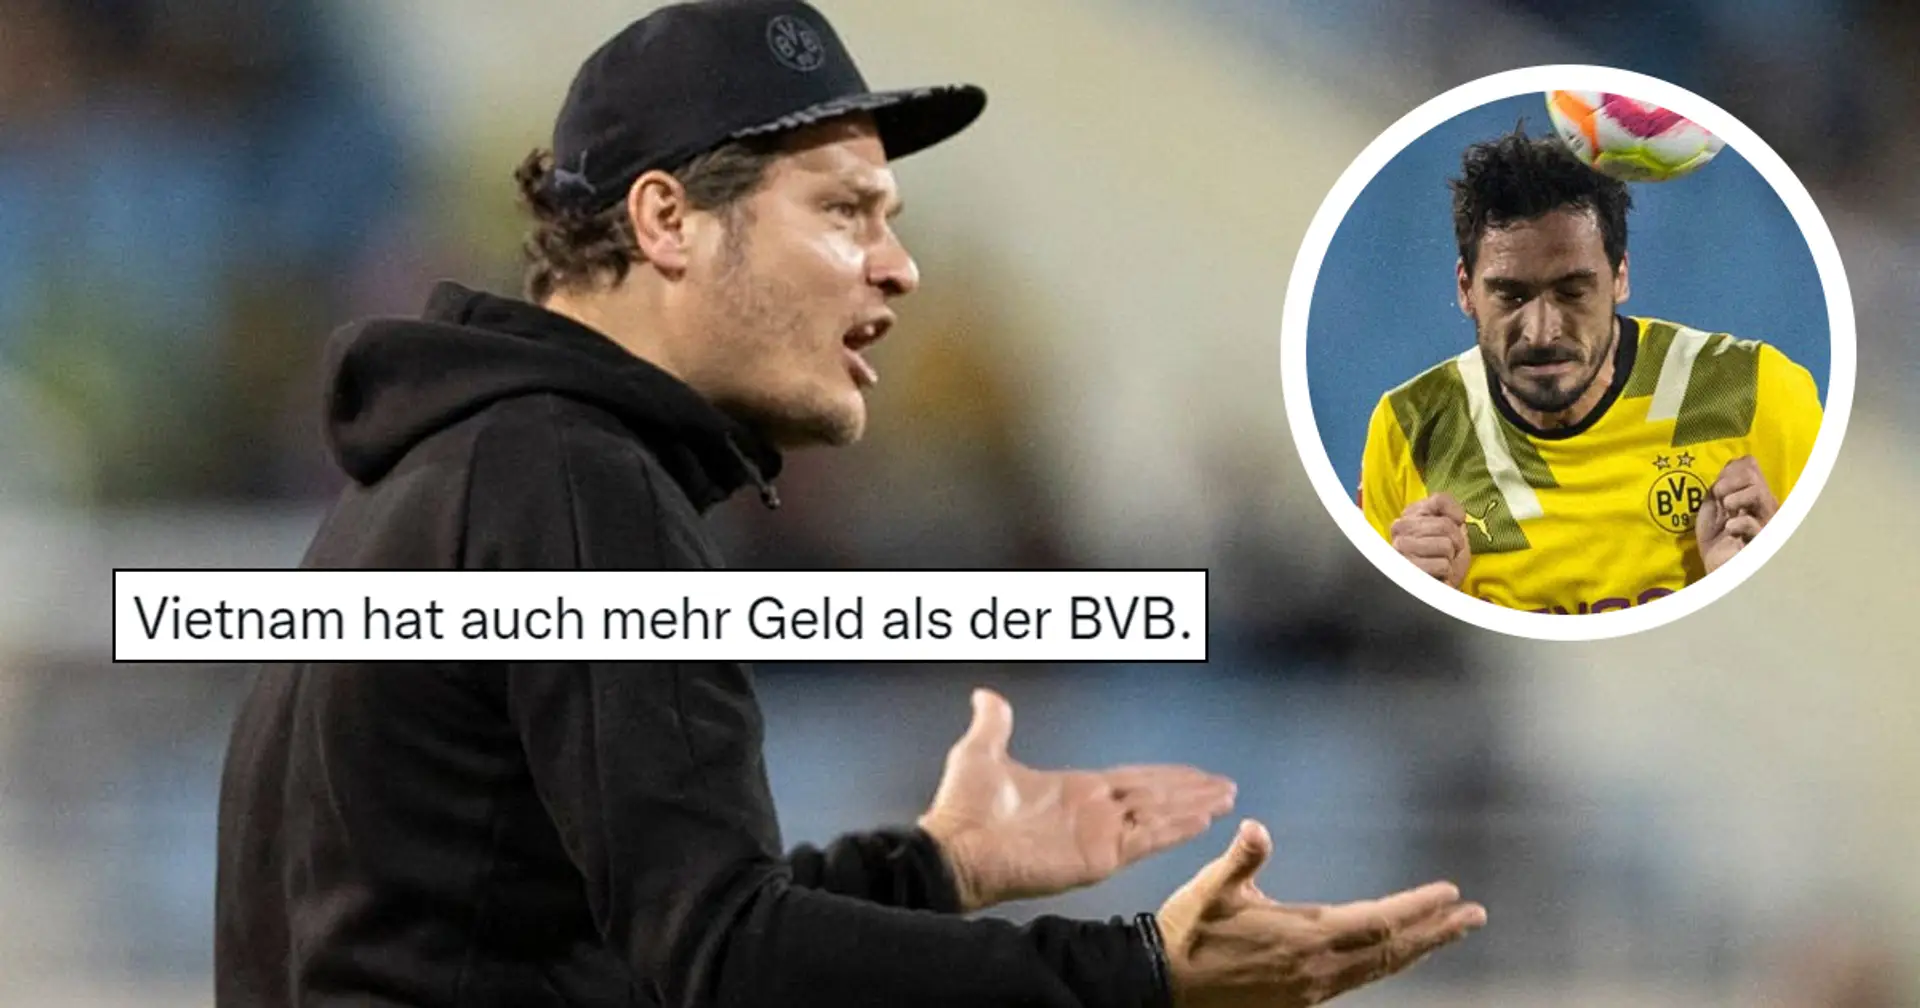 "Es ist trotzdem peinlich gegen die zu verlieren": BVB-Fan erklärt, warum er nach der Niederlage gegen Vietnam frustriert ist